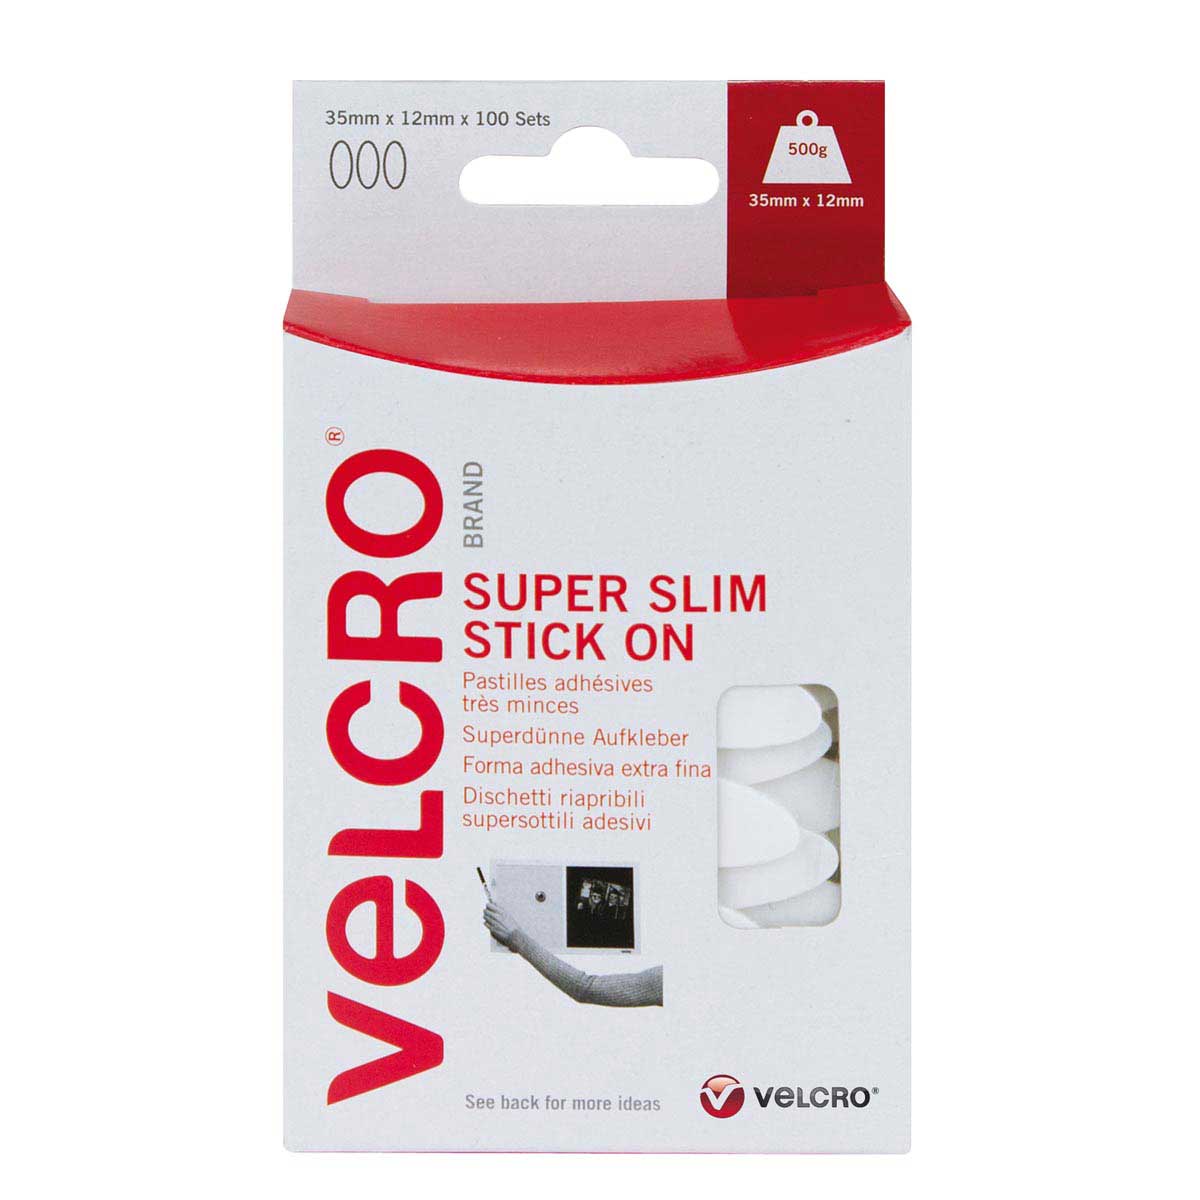 Super Slim Stick on Velcro